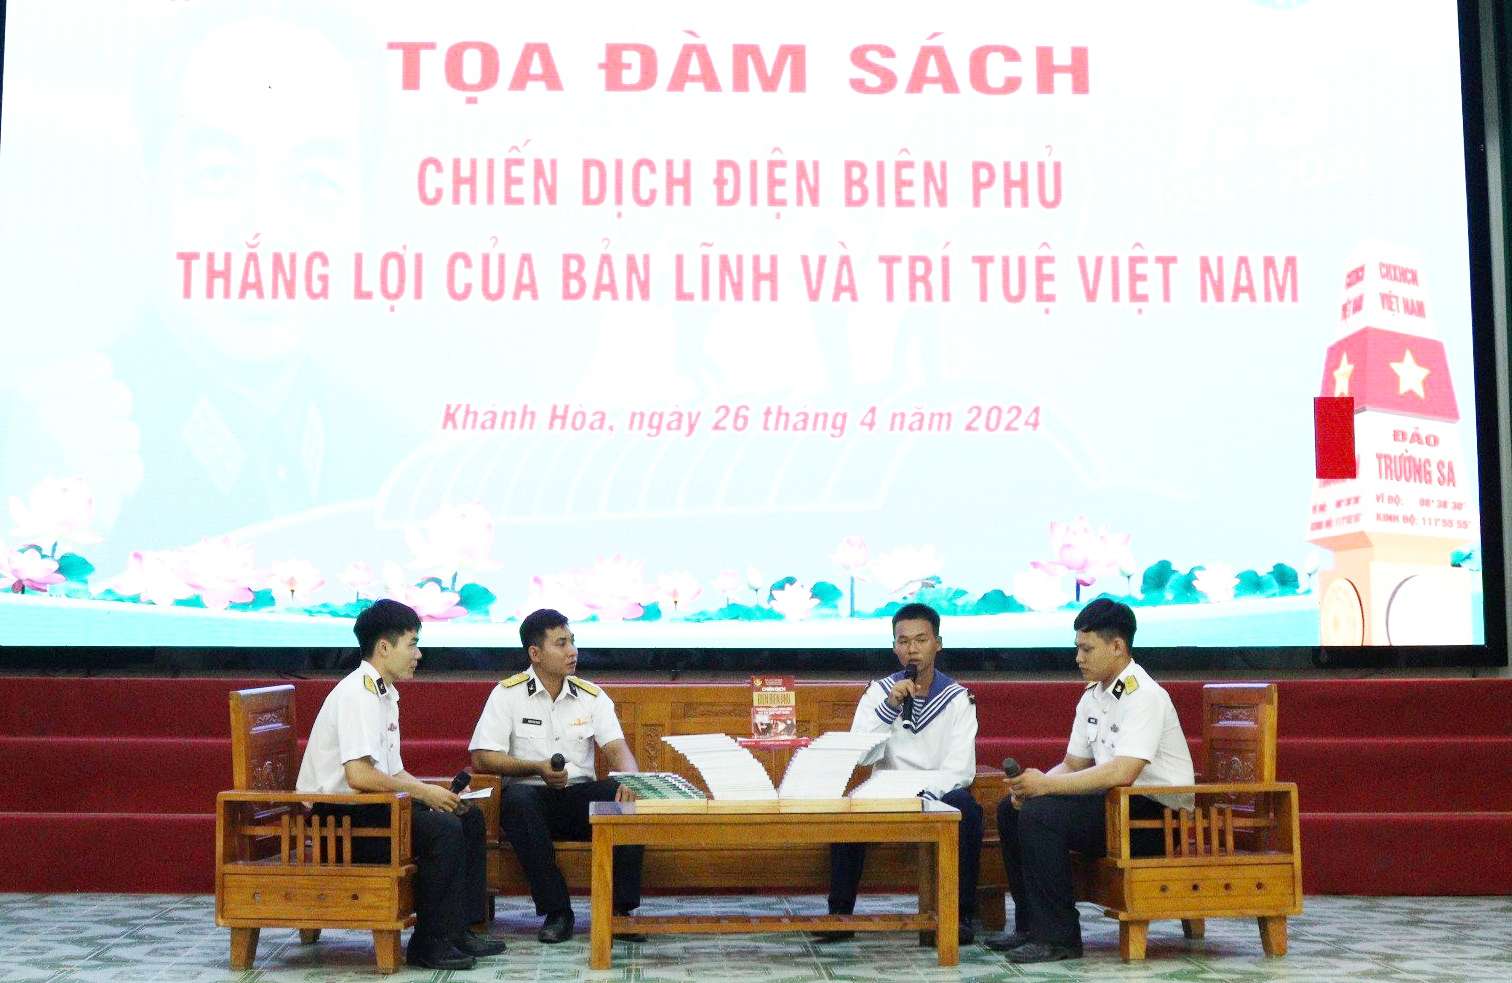 Toạ đàm sách “Chiến dịch Điện Biên Phủ thắng lợi của bản lĩnh và trí tuệ Việt Nam”